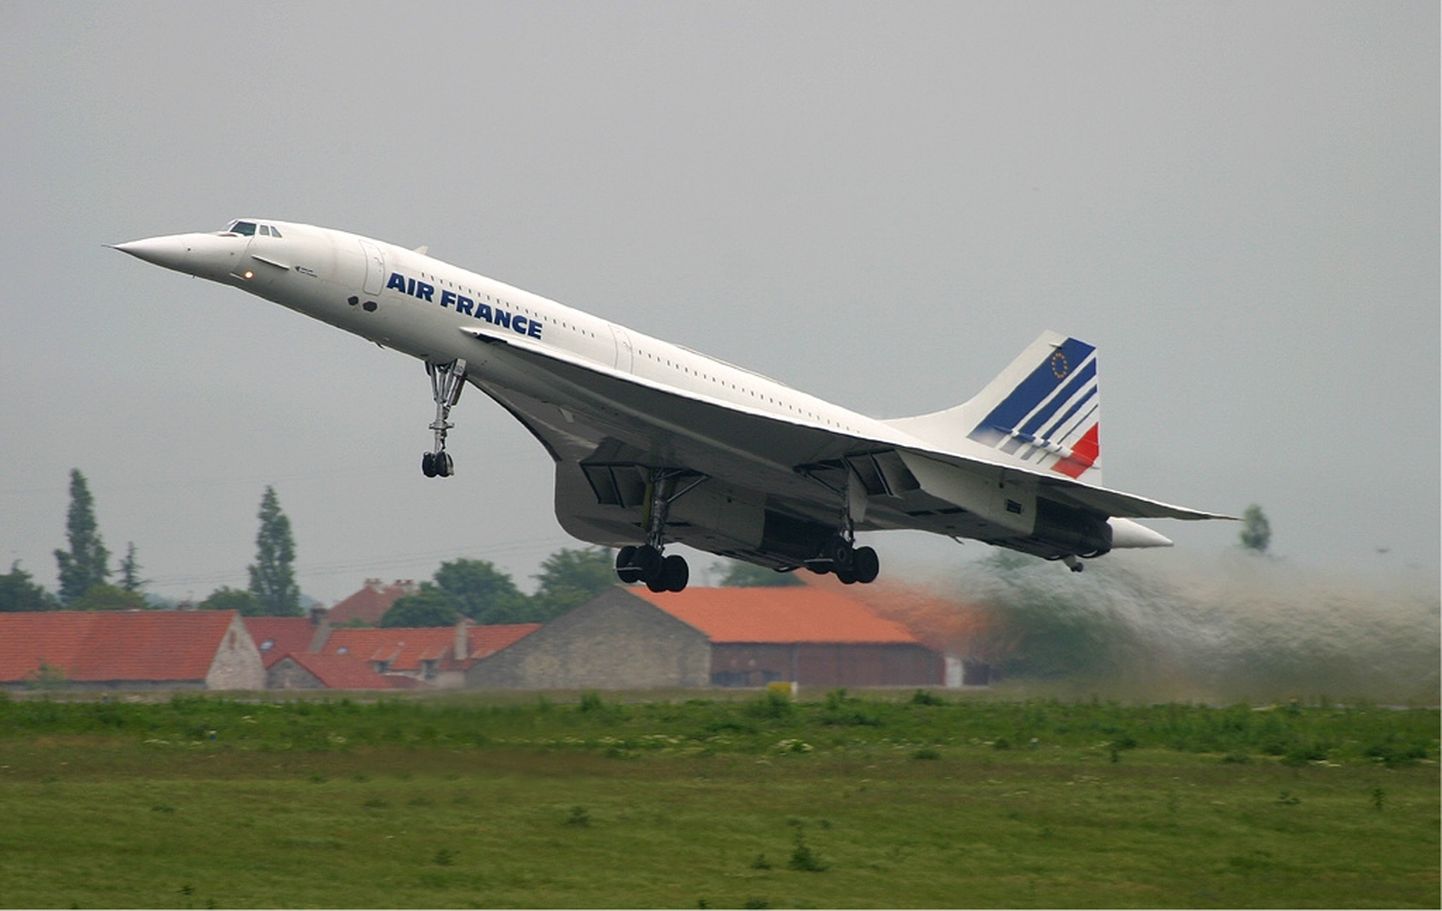 Air France ülehelikiirusega reisilennuk Concorde tegi oma viimase lennu novembris 2003. Sellest ajast on inimeste peades palju muutunud.